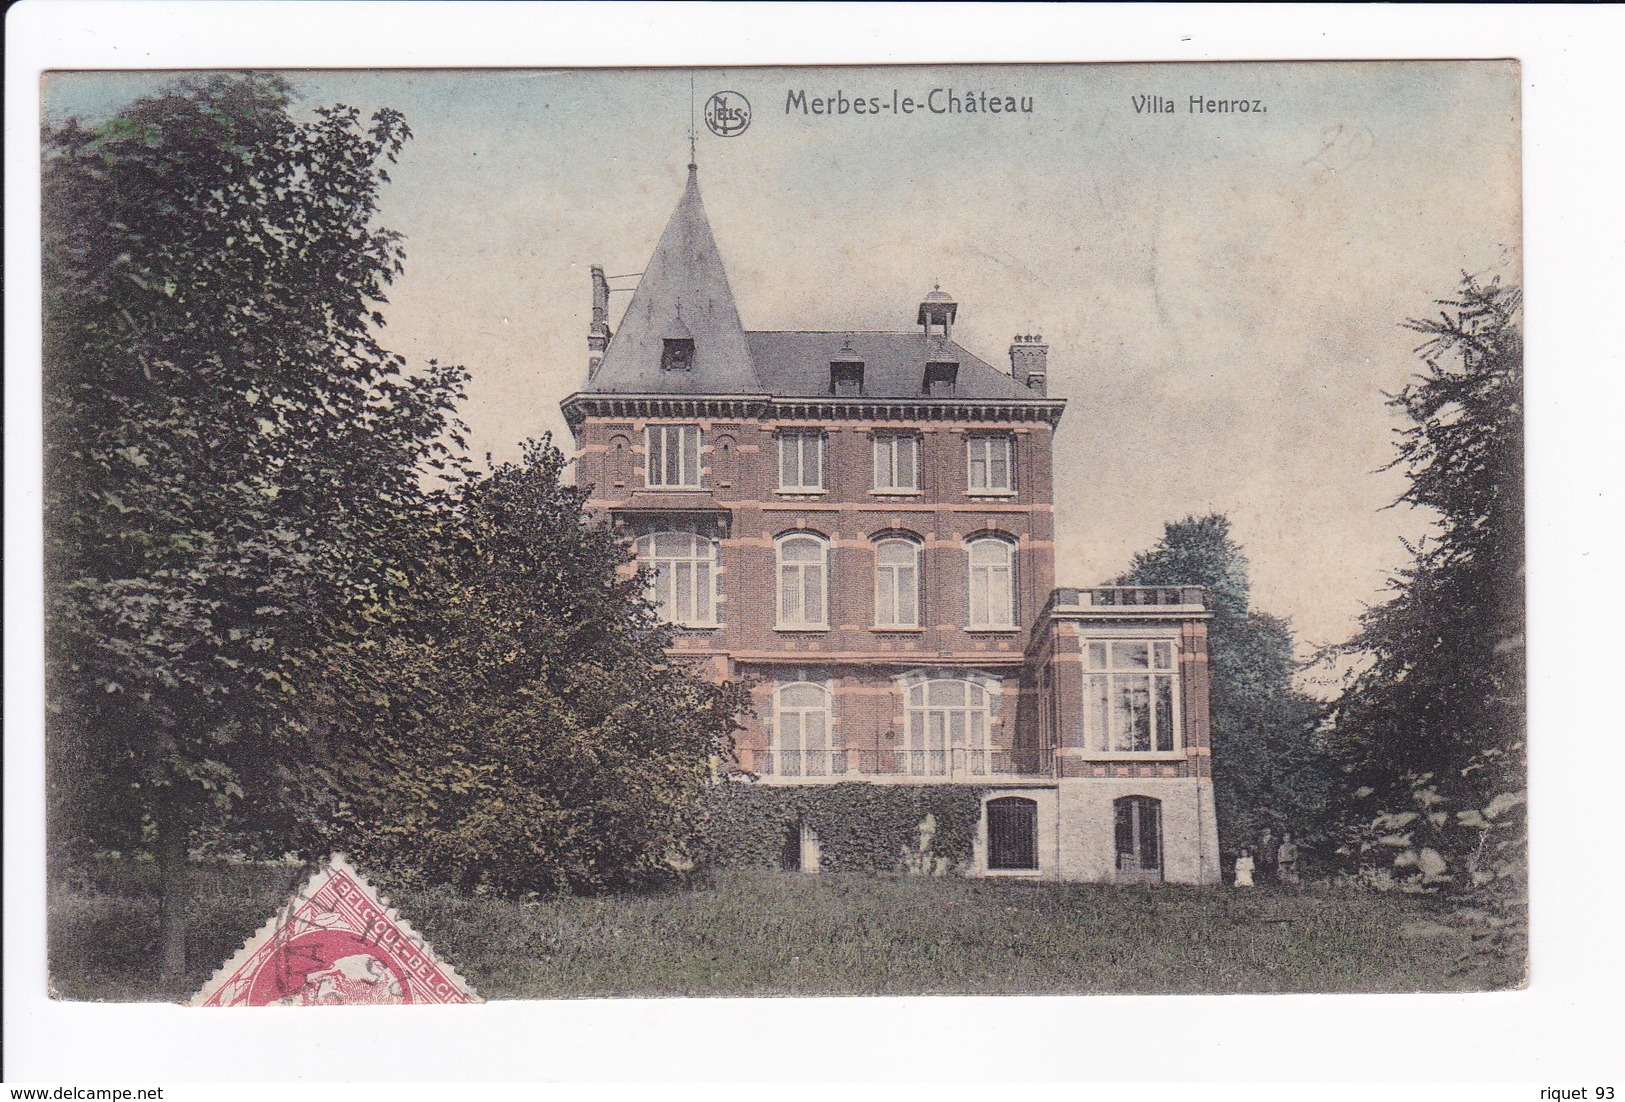 Merbes-le-Château - Villa Henroz - Merbes-le-Chateau